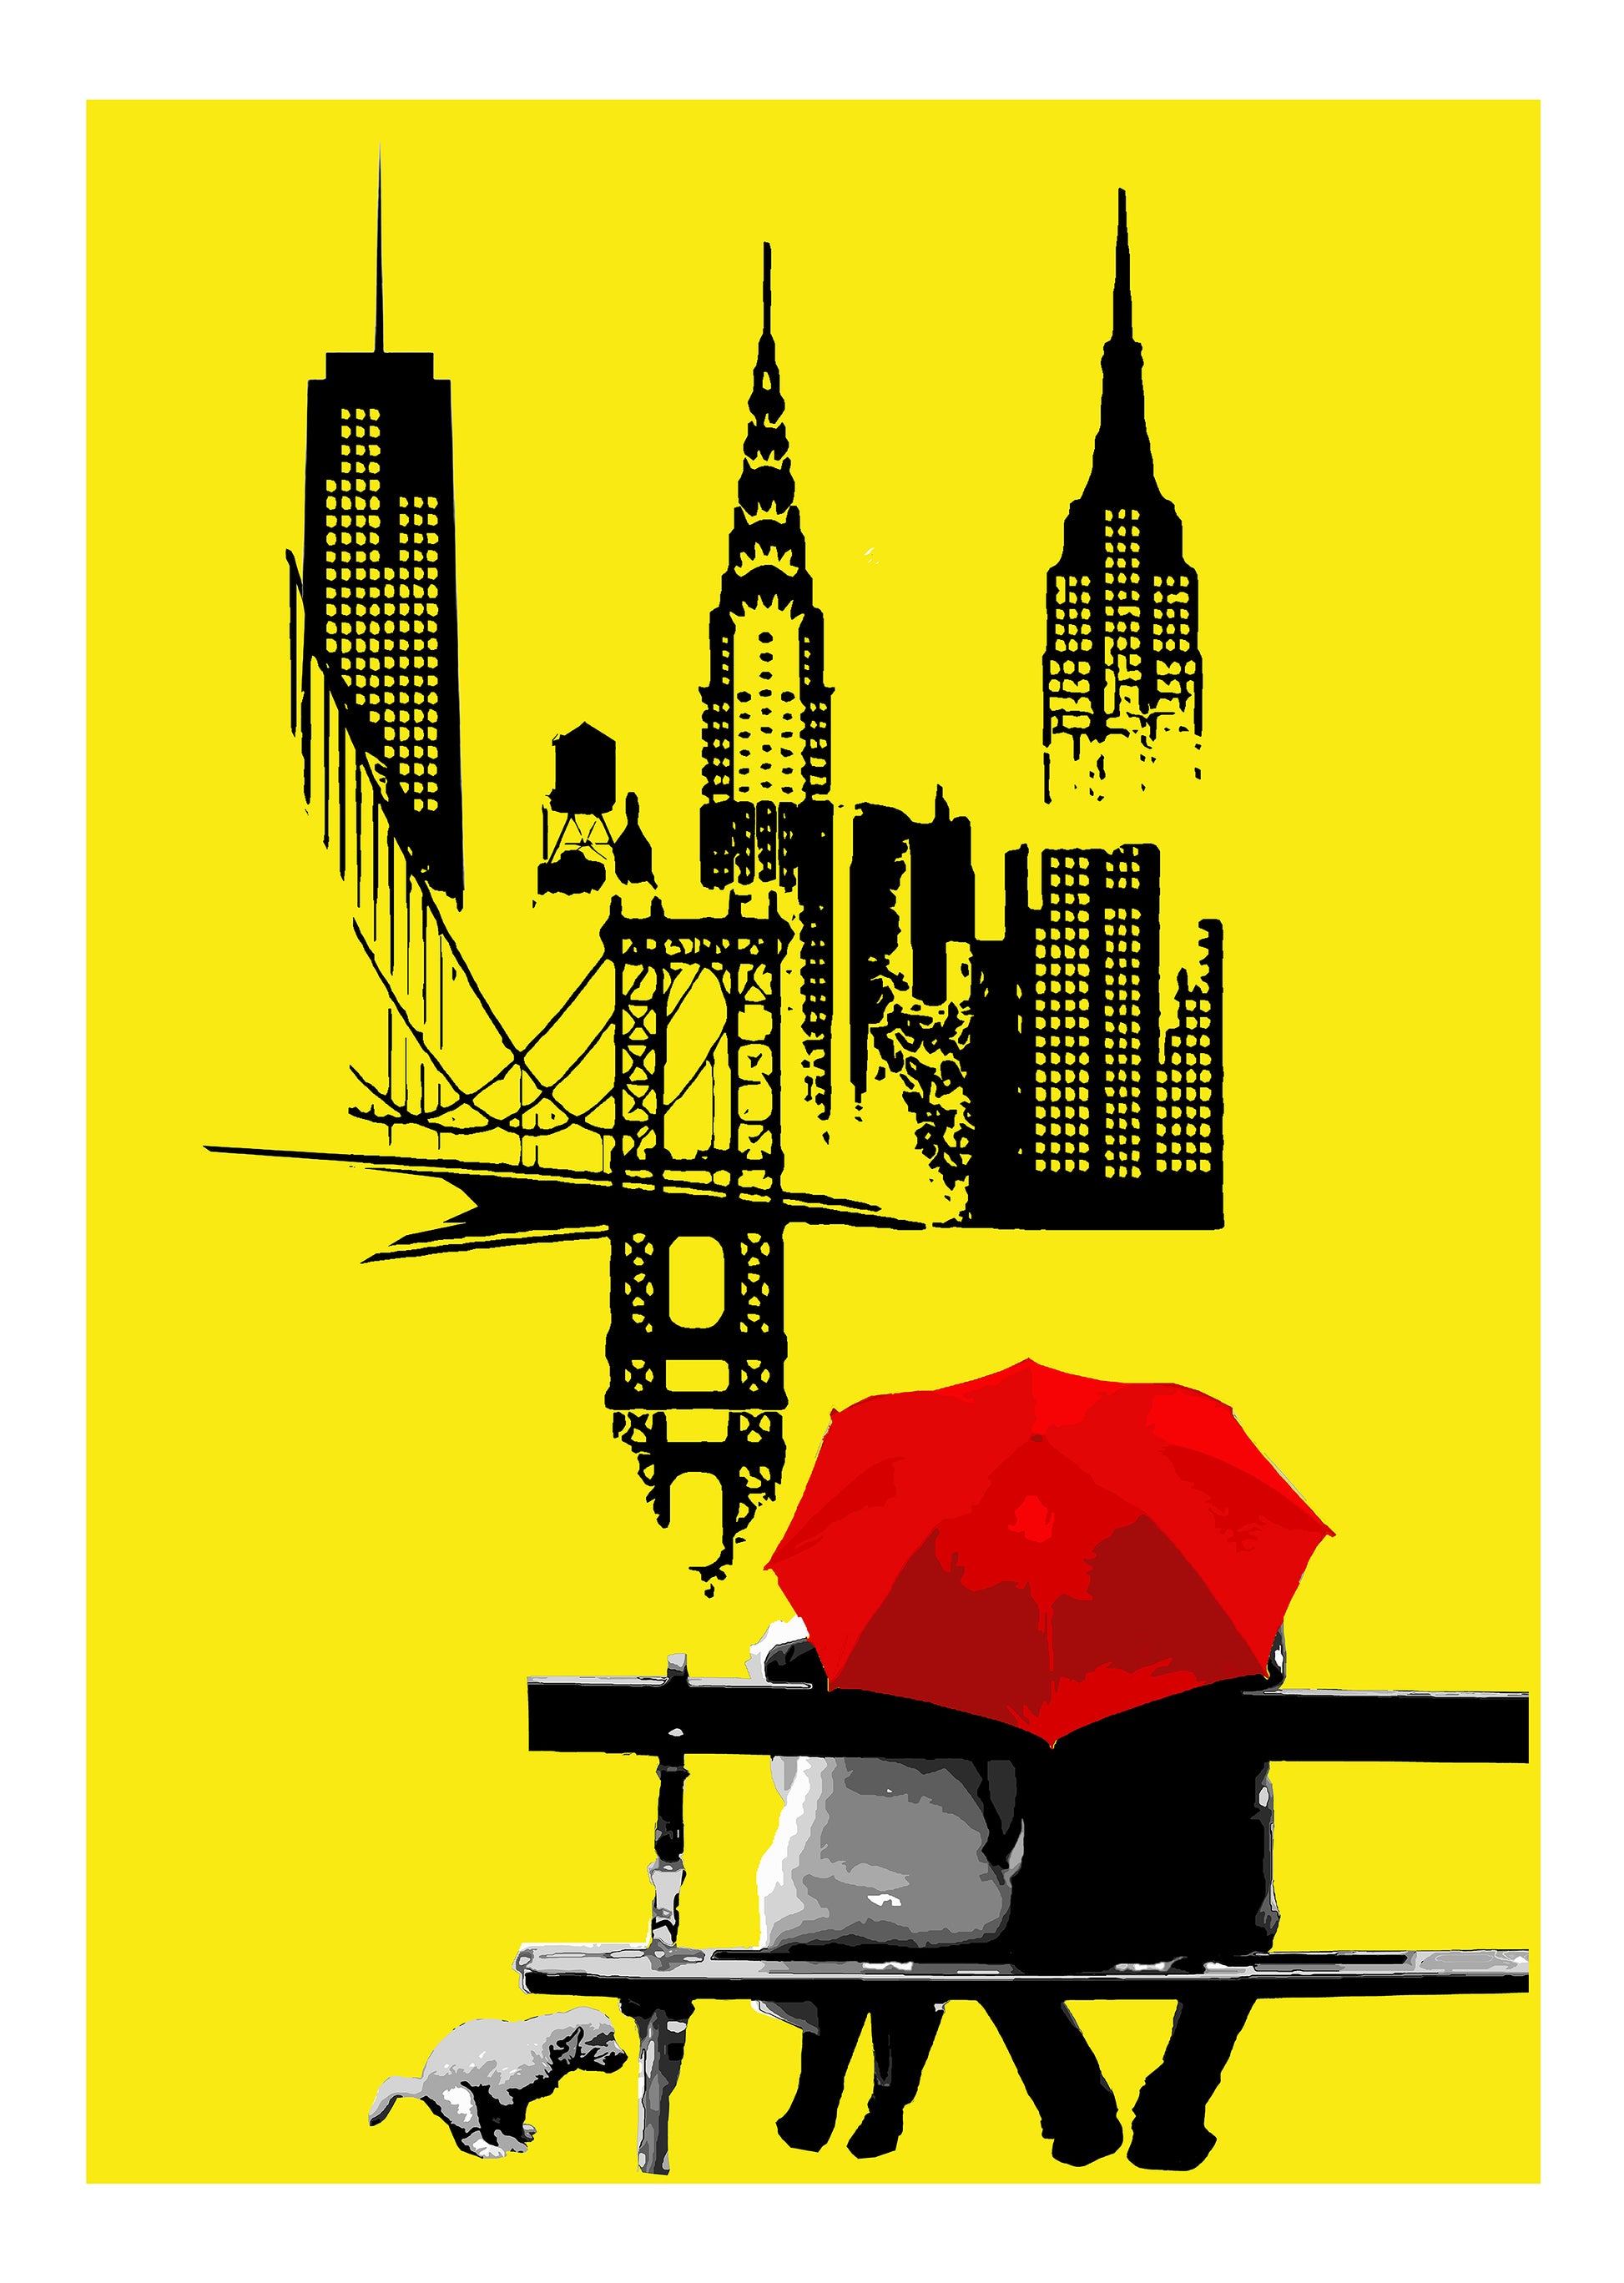 Don't Poop di Any. Stampa giclée stampa su carta 320 gsm rappresentante una coppia seduta e protetta da un ombrello rosso mentre ammira la città di New York | Cd Studio d'Arte